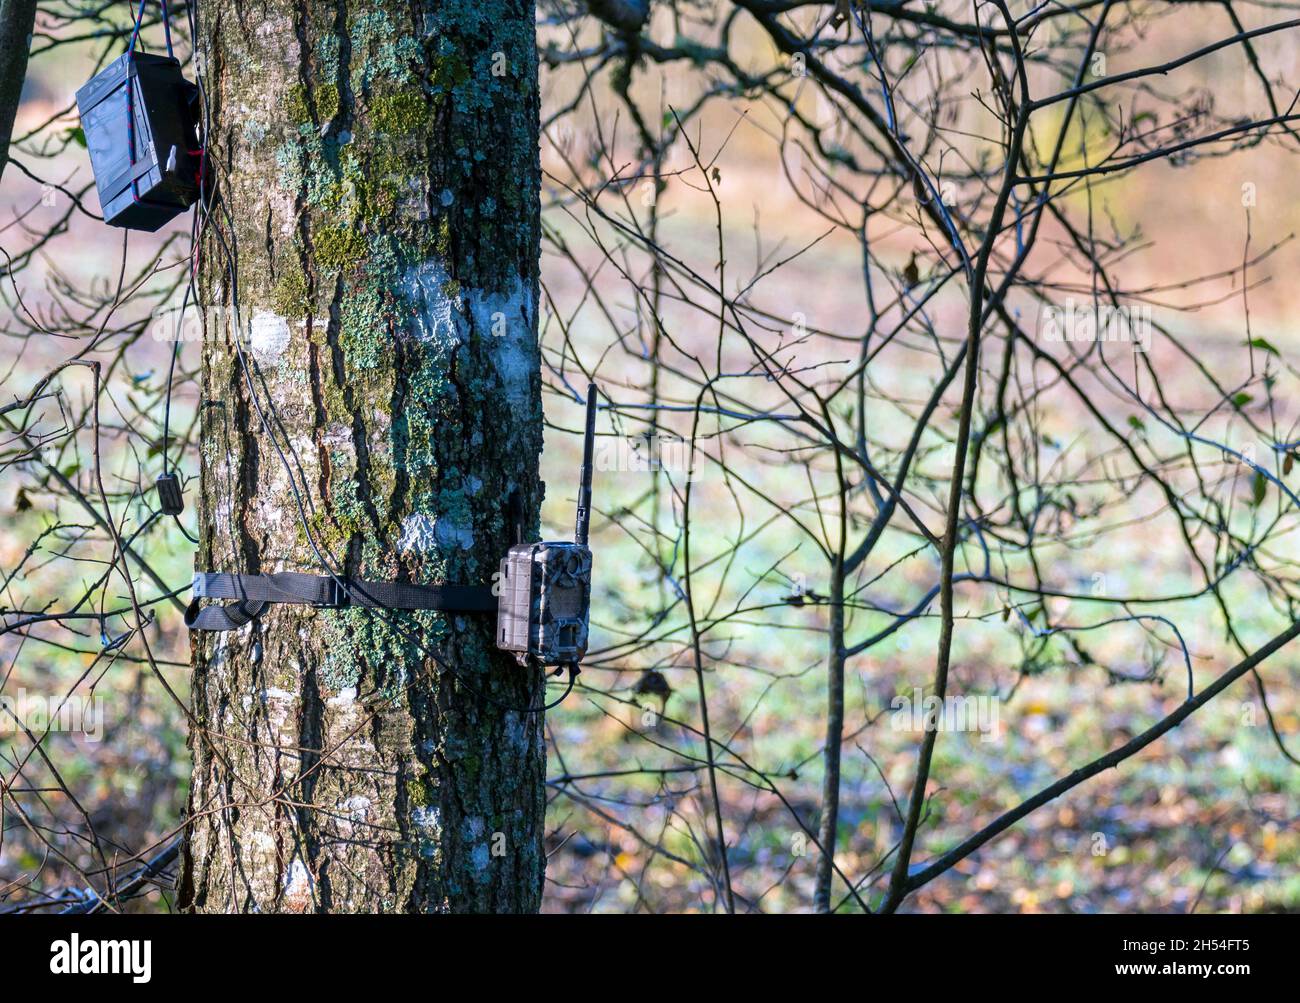 Waldtiere verfolgen Bewegungskamera, die im Freien am Baum befestigt ist. Stockfoto